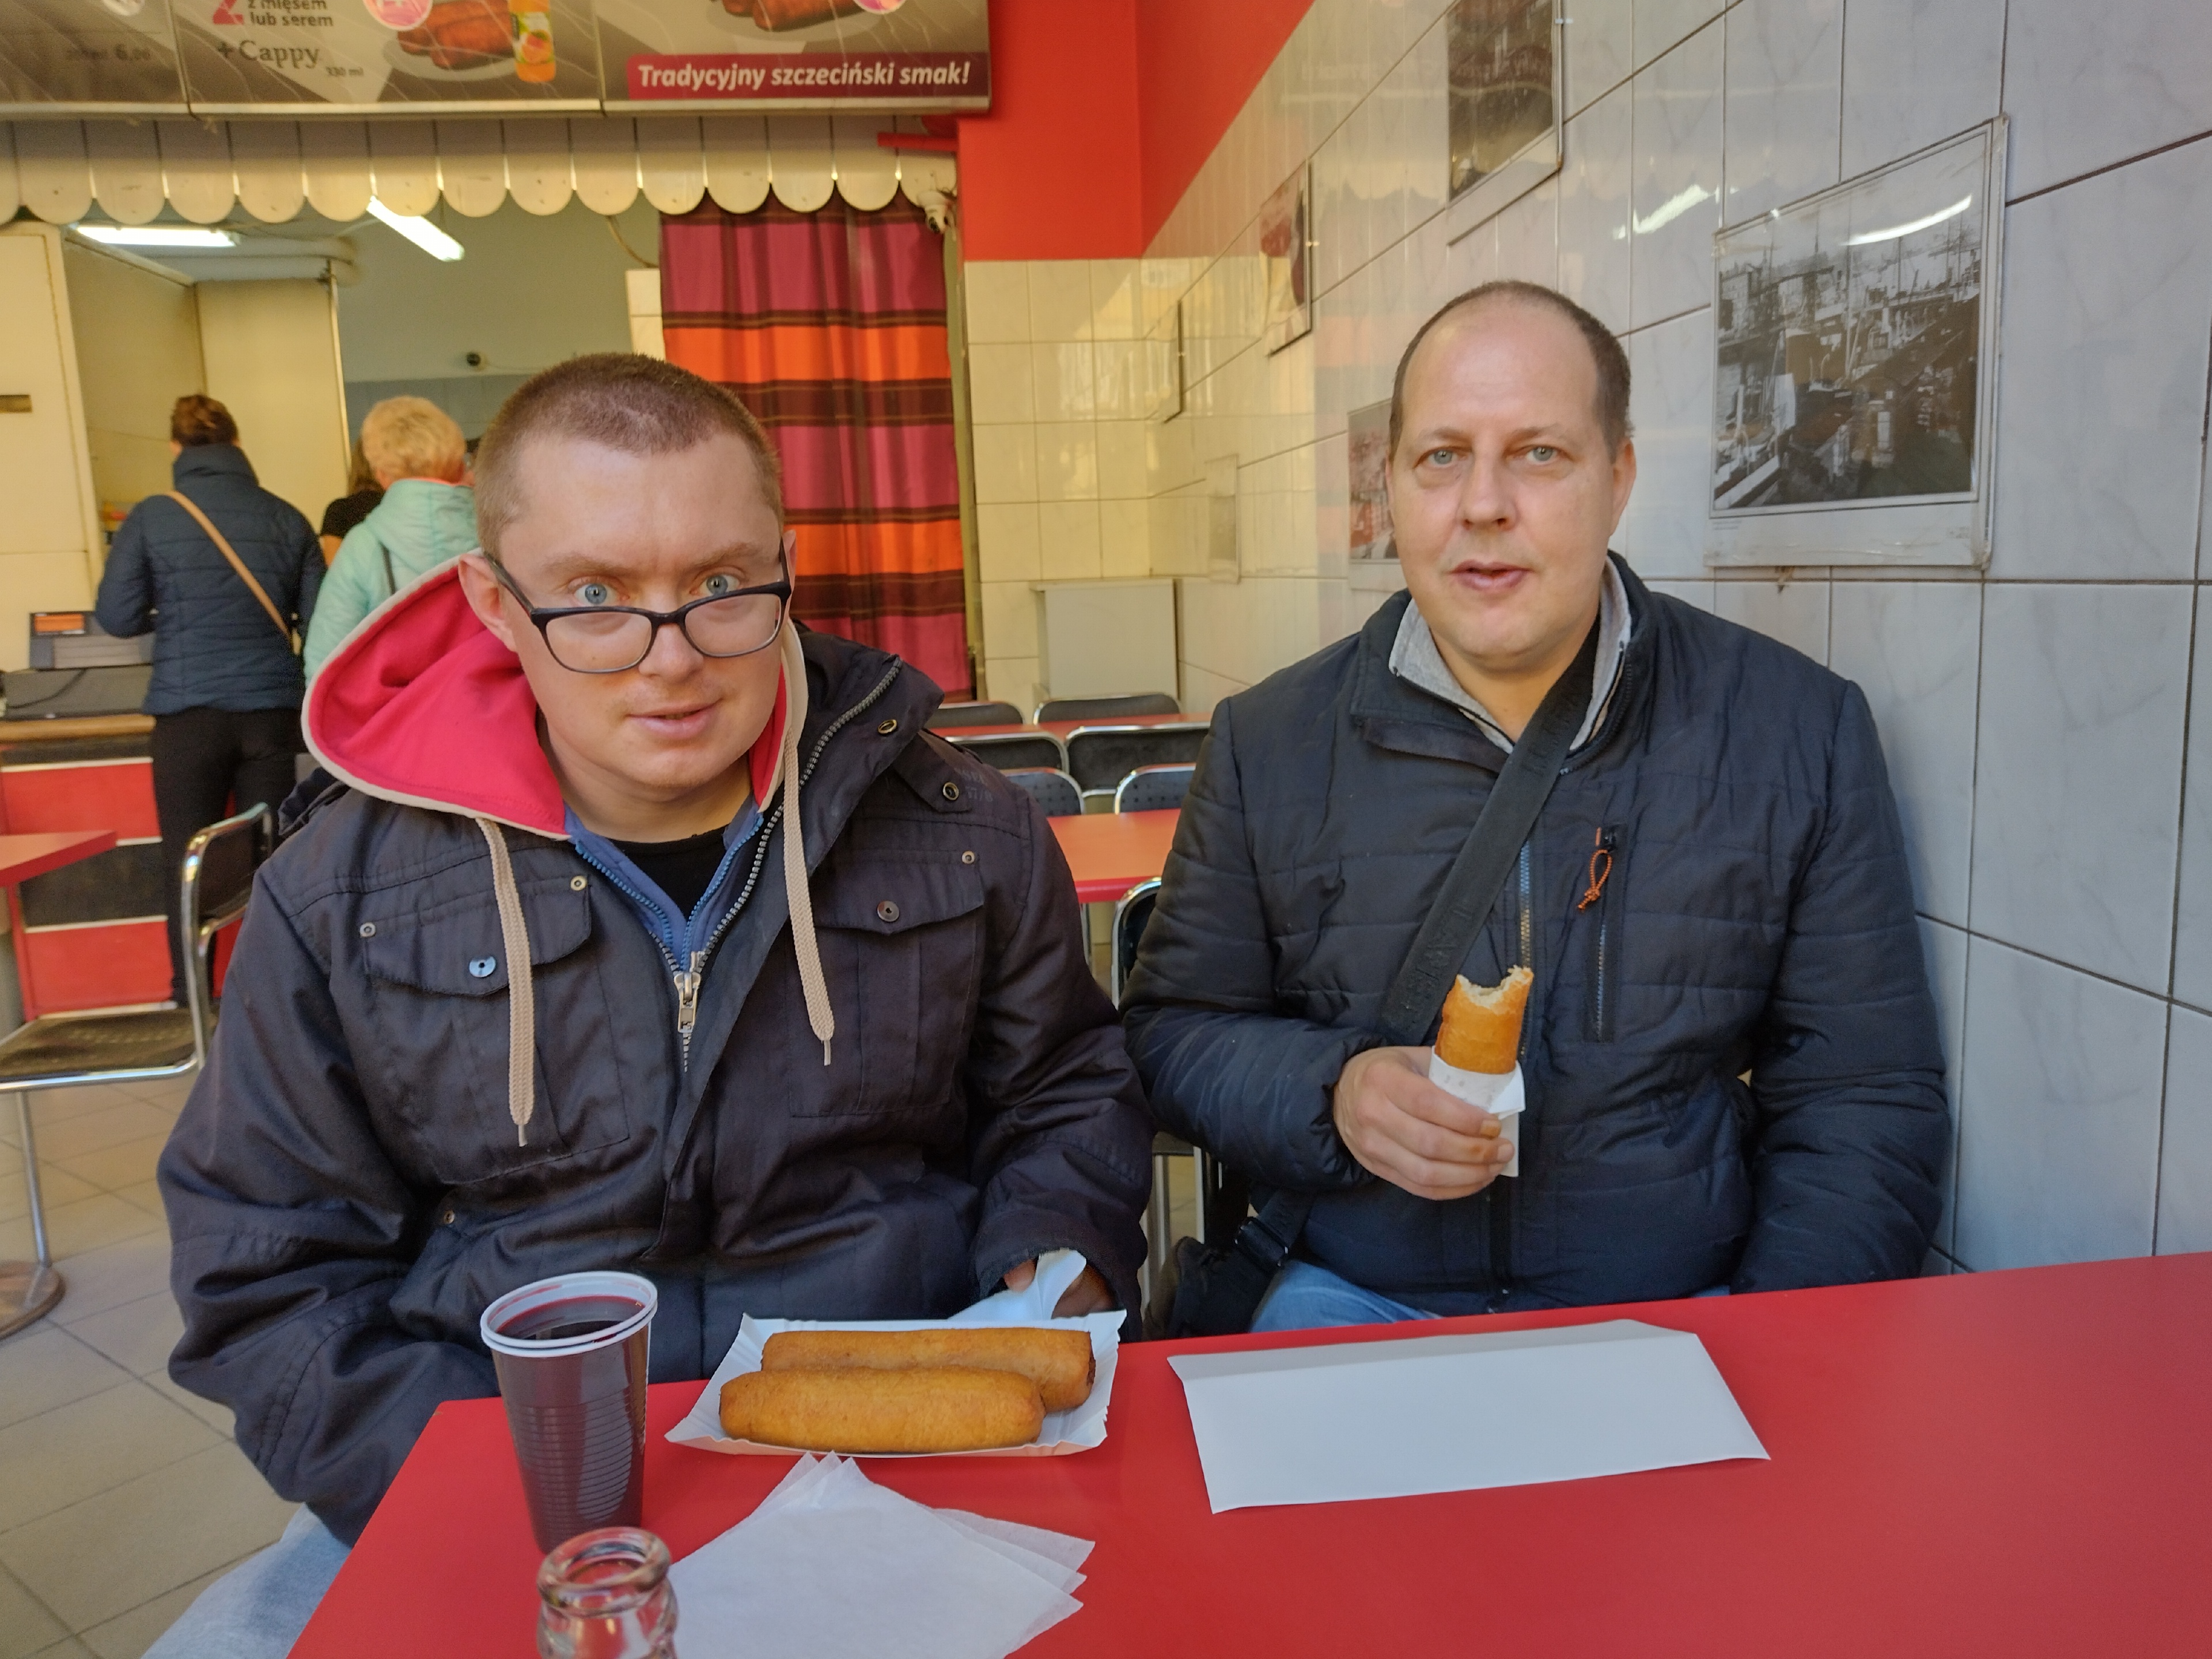 Dwóch mężczyzn w barze jedzą paszteciki szczecińskie. 